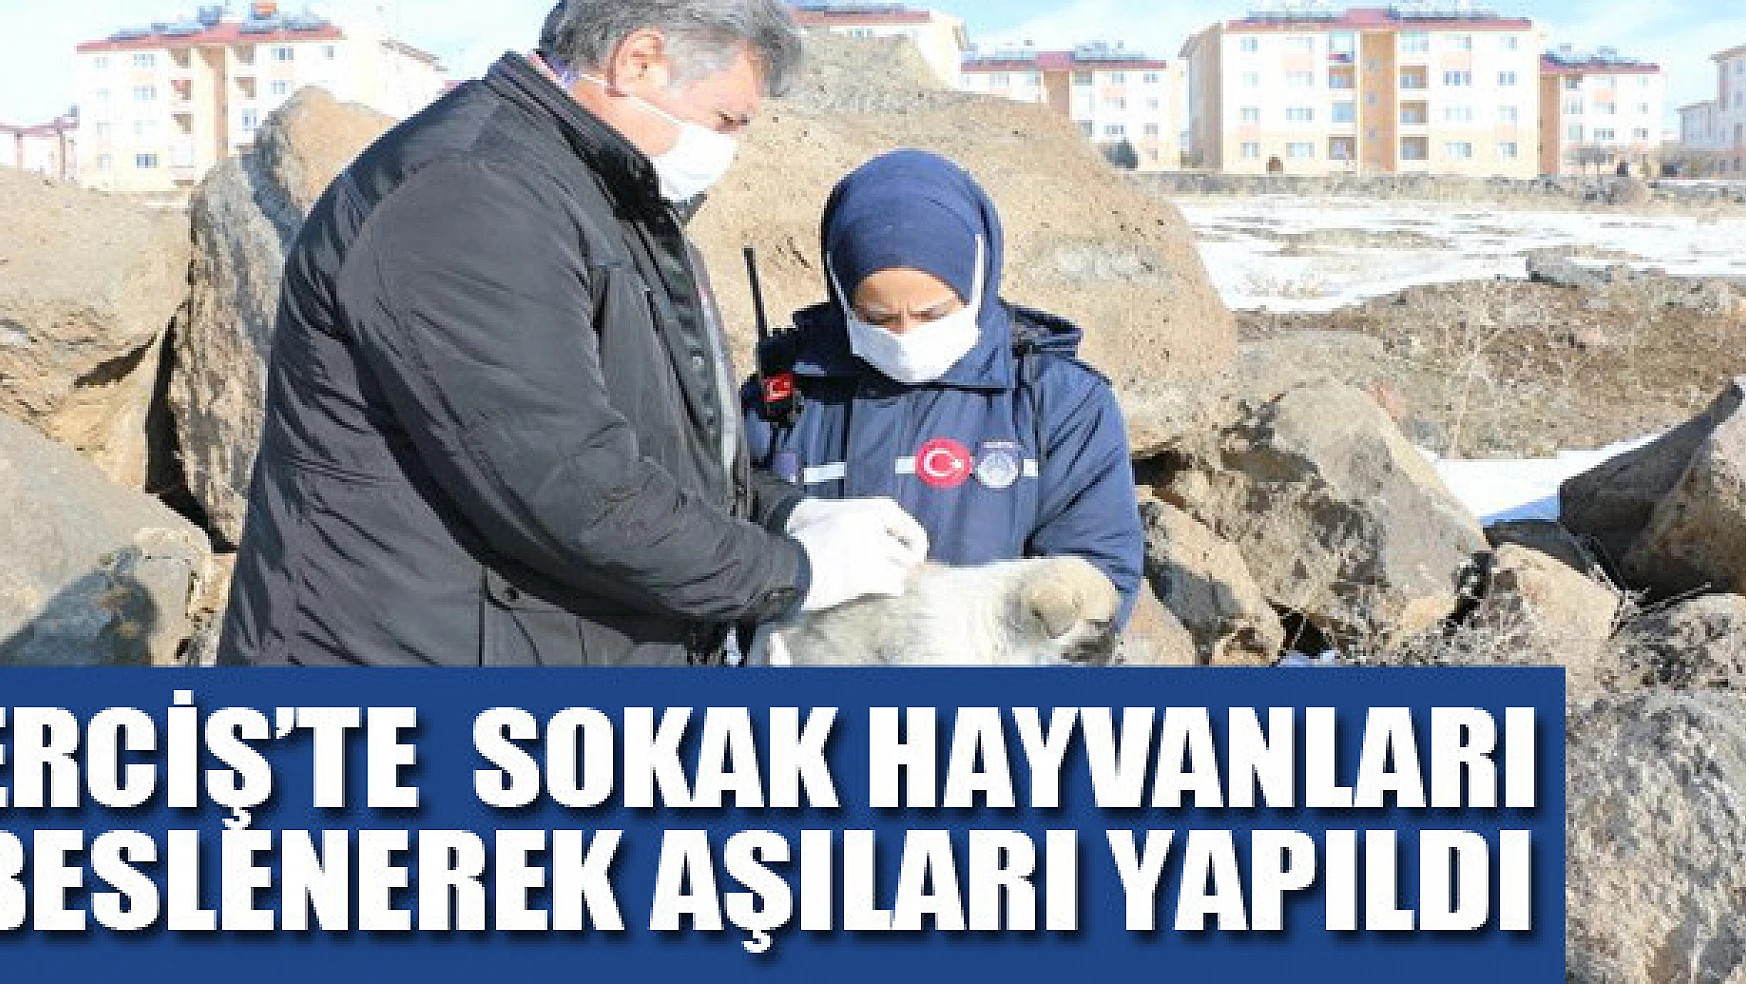 Erciş'te drone ile tespit edilen sokak hayvanları beslenerek aşıları yapıldı